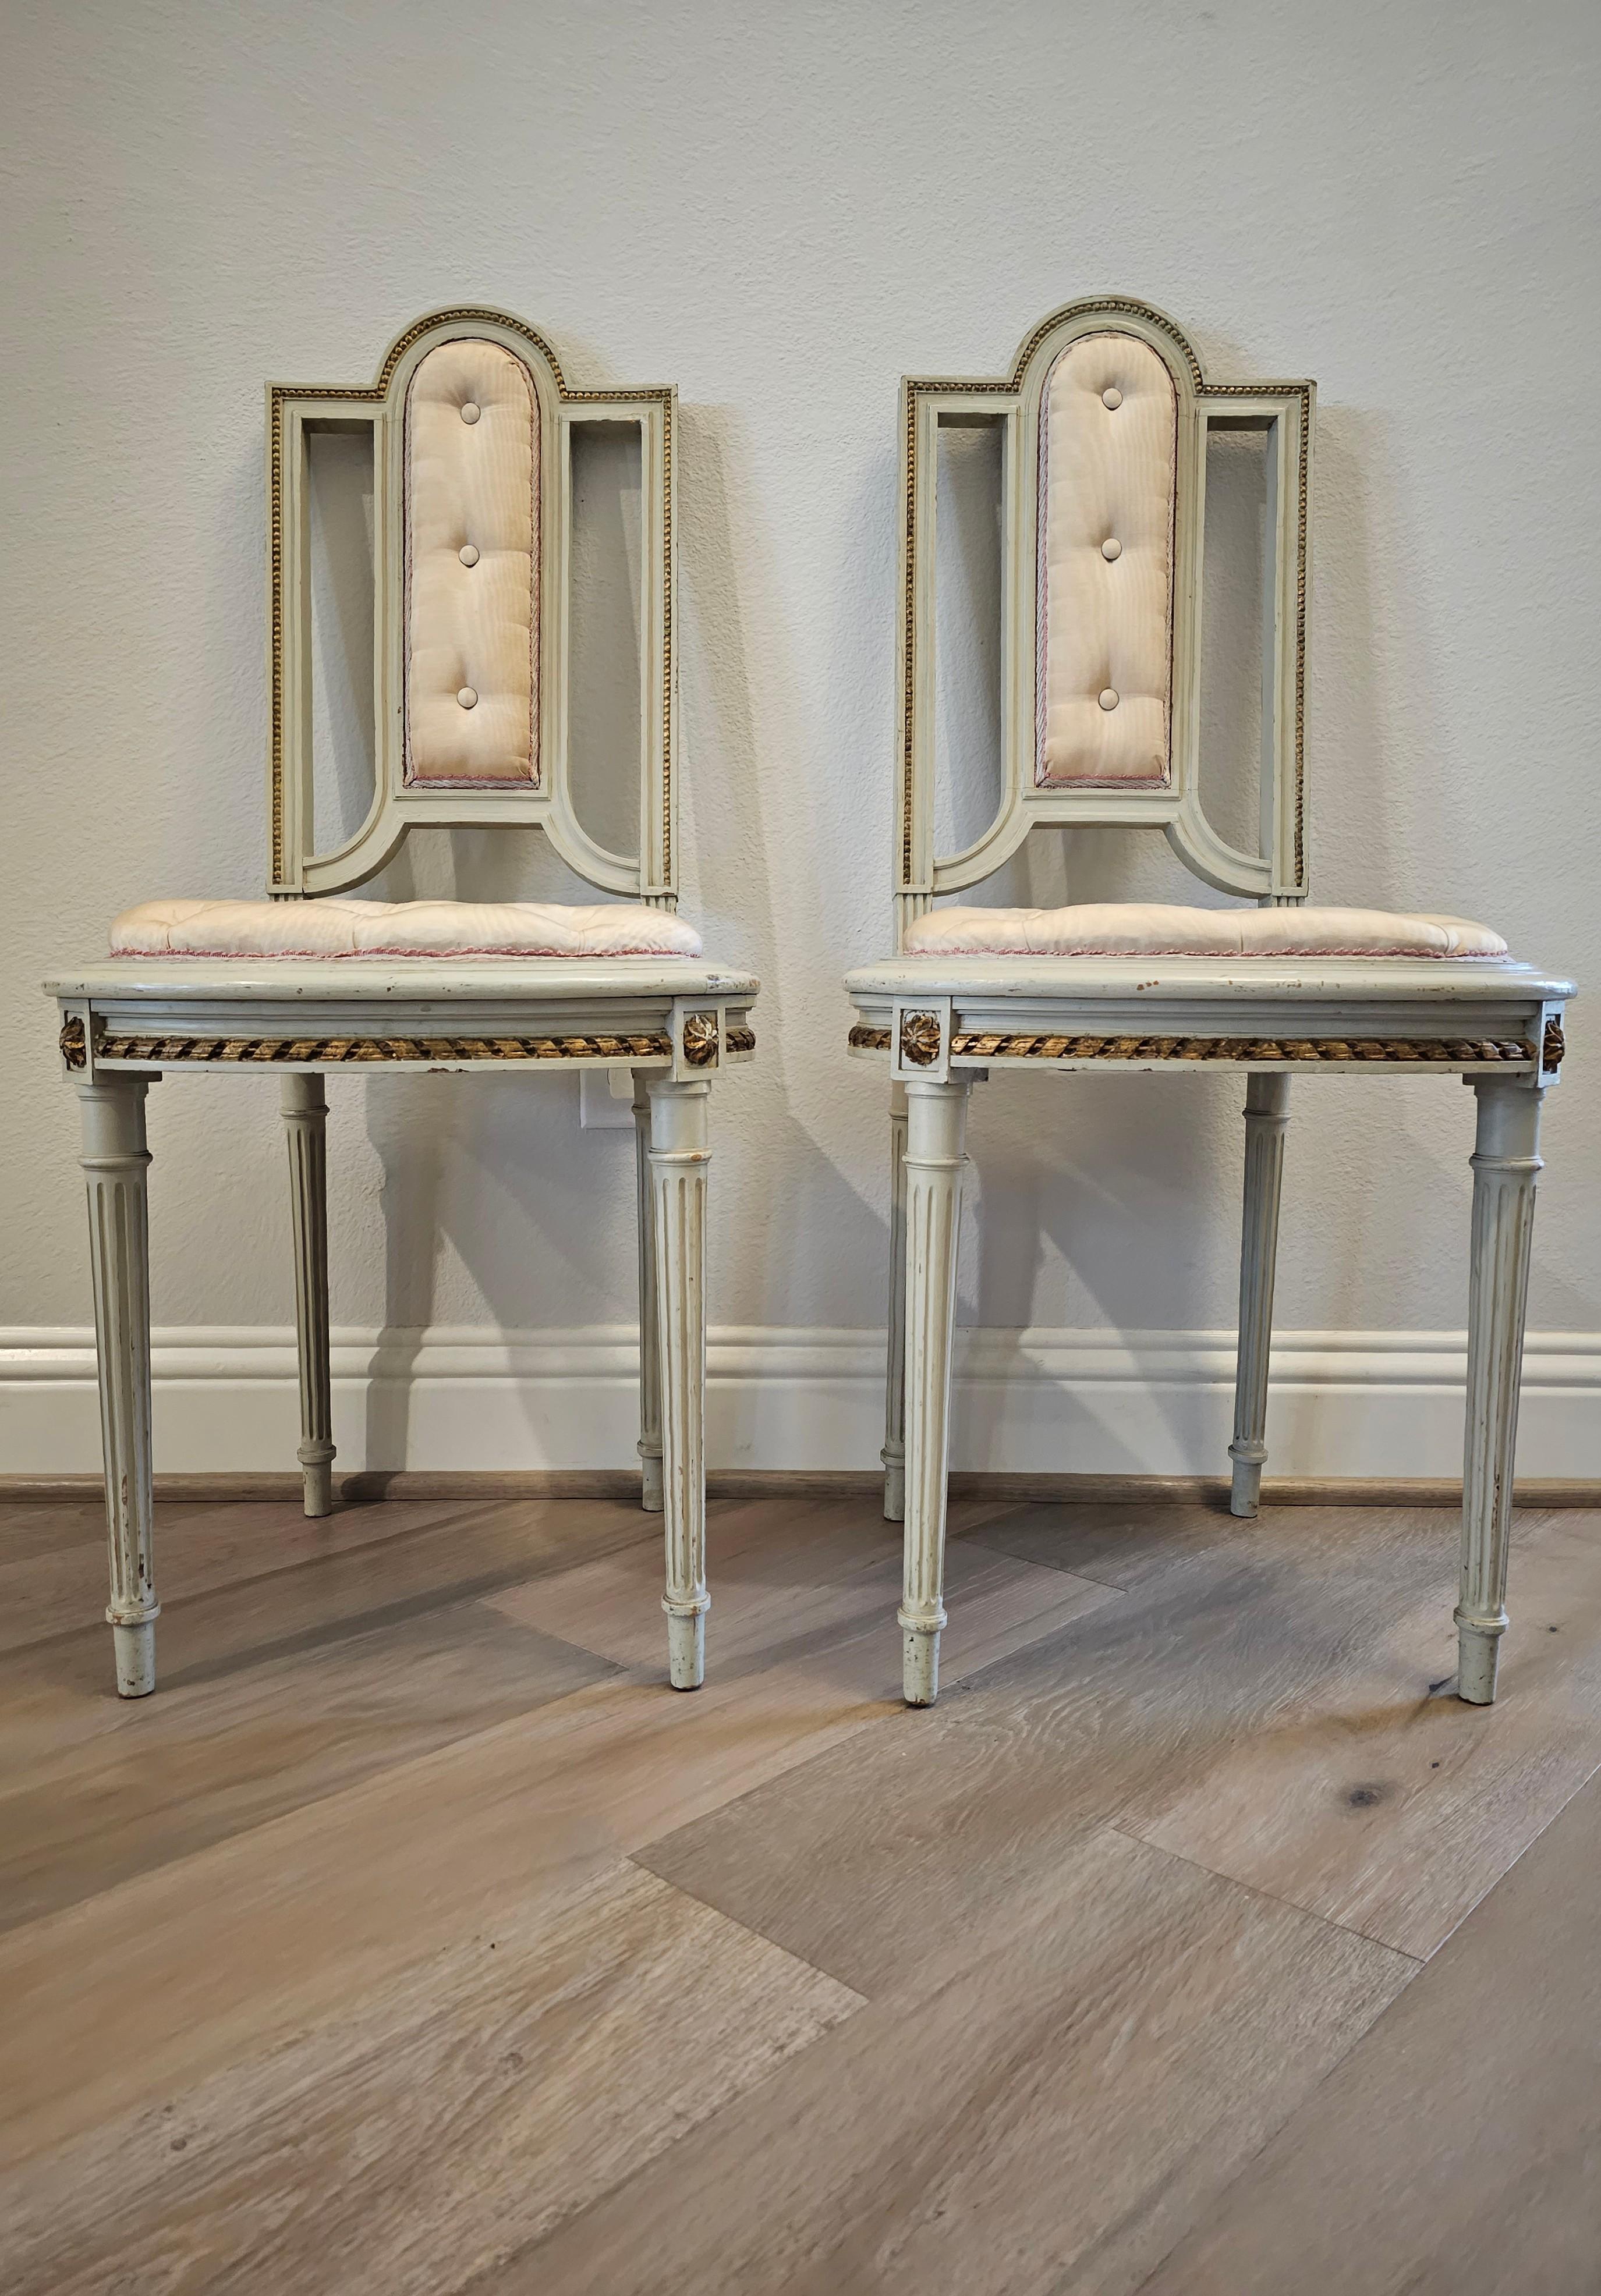 Une élégante paire de petites chaises françaises de la Belle Époque (1871-1914), de style Louis XVI, peintes à la feuille d'or.

Fabriqué à la main en France à la fin du 19ème / début du 20ème siècle, exécuté dans le luxueux style Louis XV,